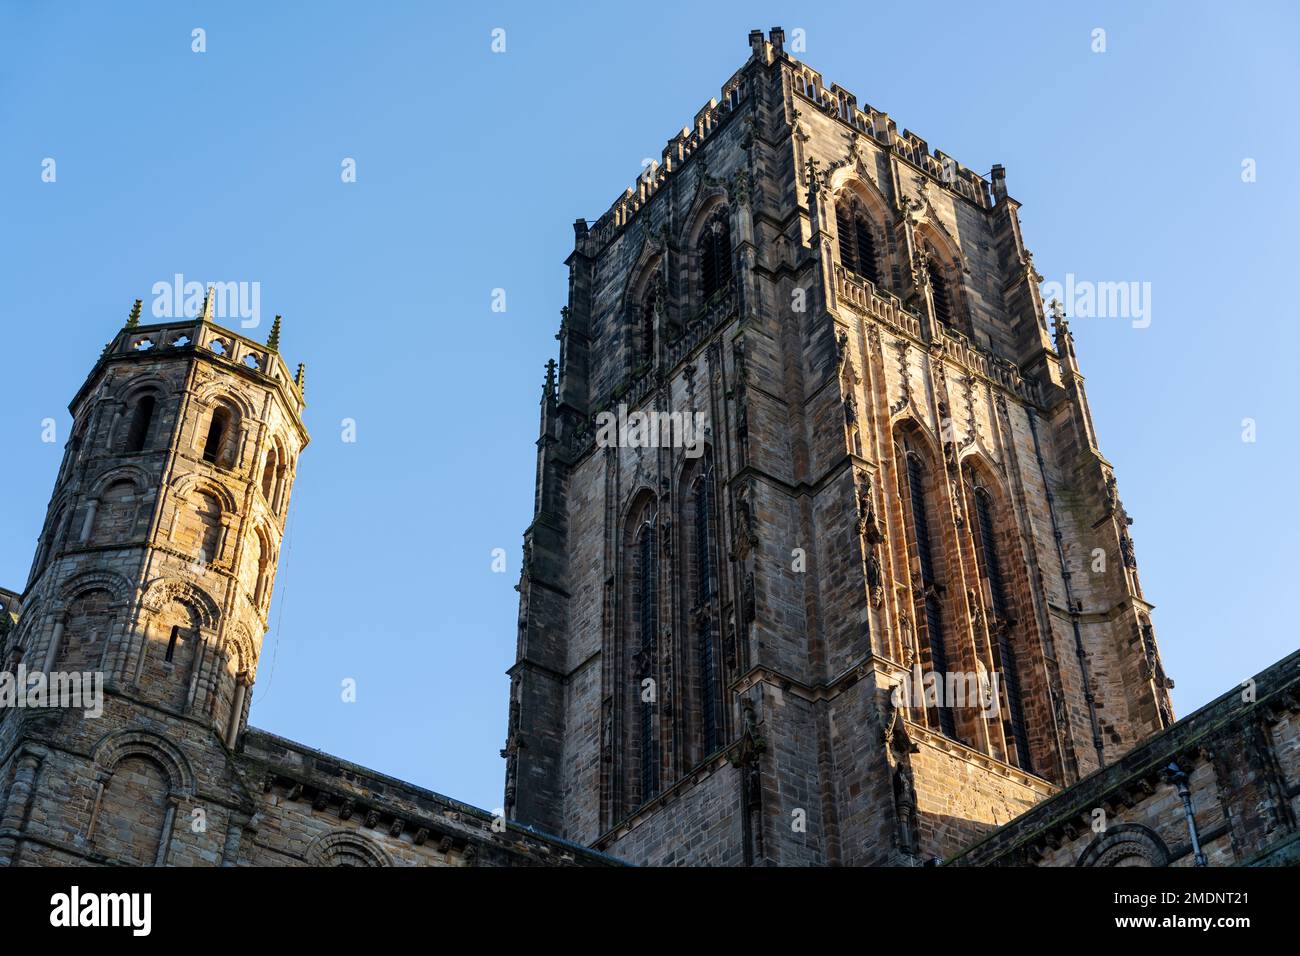 La Cattedrale di Durham, costruita tra il 1093 e il 1133, con aggiunte fino al 1490, città di Durham, contea di Durham, Regno Unito, patrimonio dell'umanità dell'UNESCO. Foto Stock